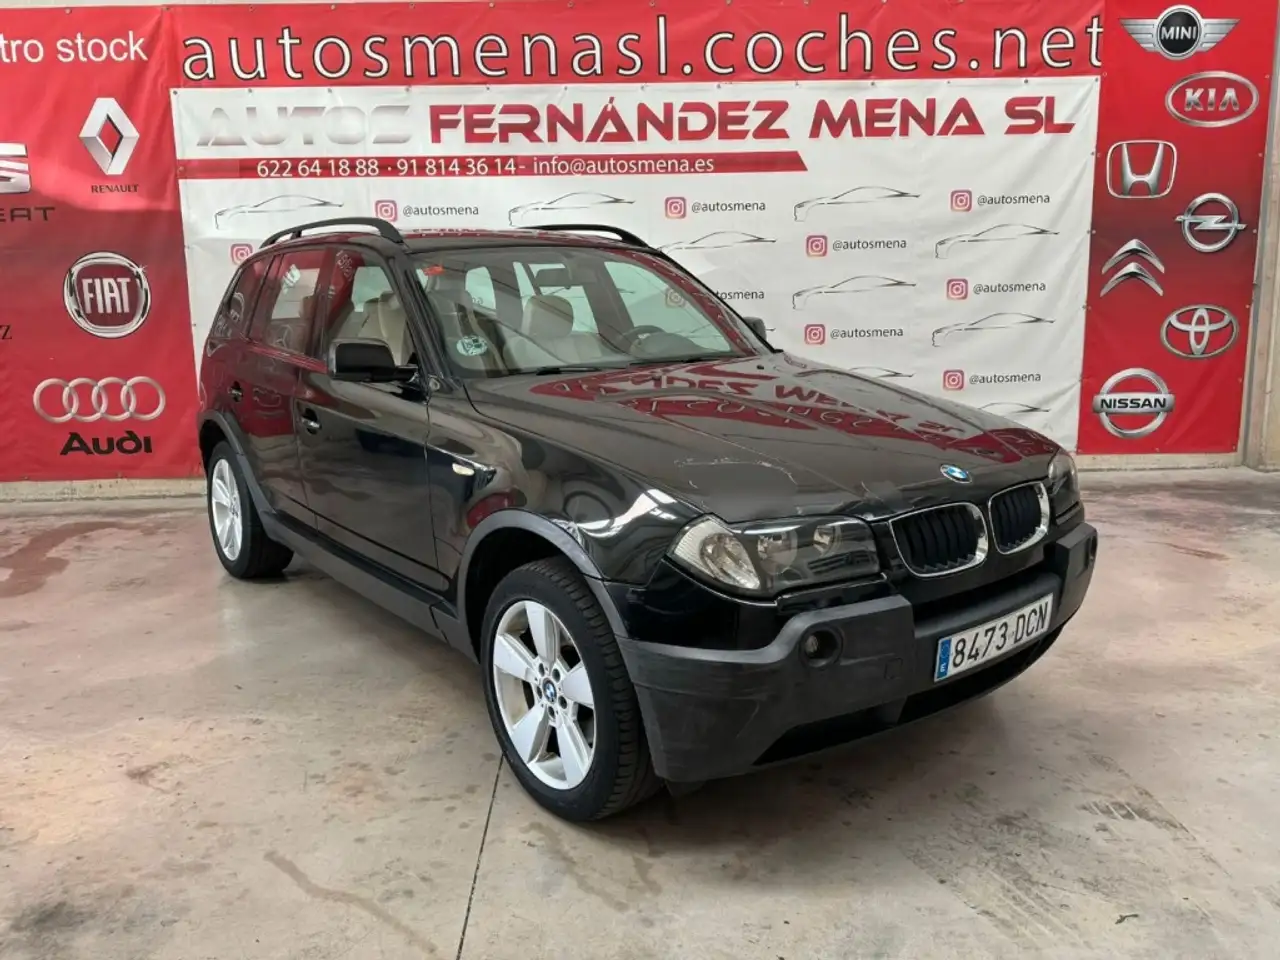 BMW X3 SUV/4x4/Pick-up in Zwart tweedehands in Parla voor € 6.000,-